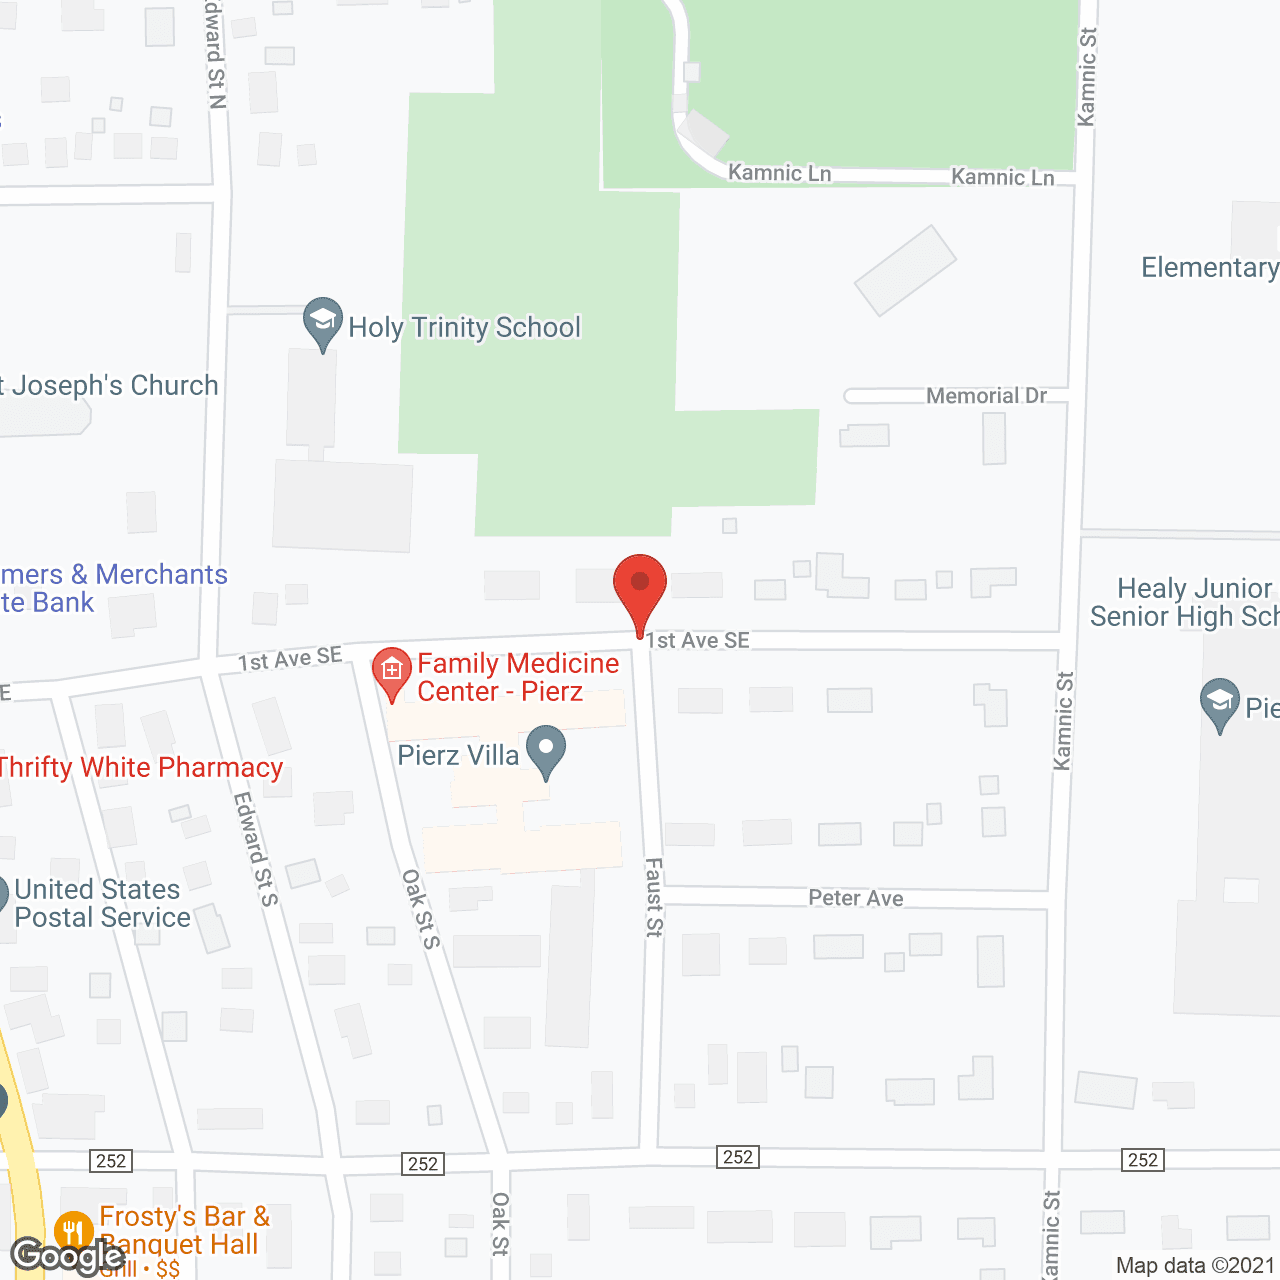 St Mary's Villa Nursing Home in google map